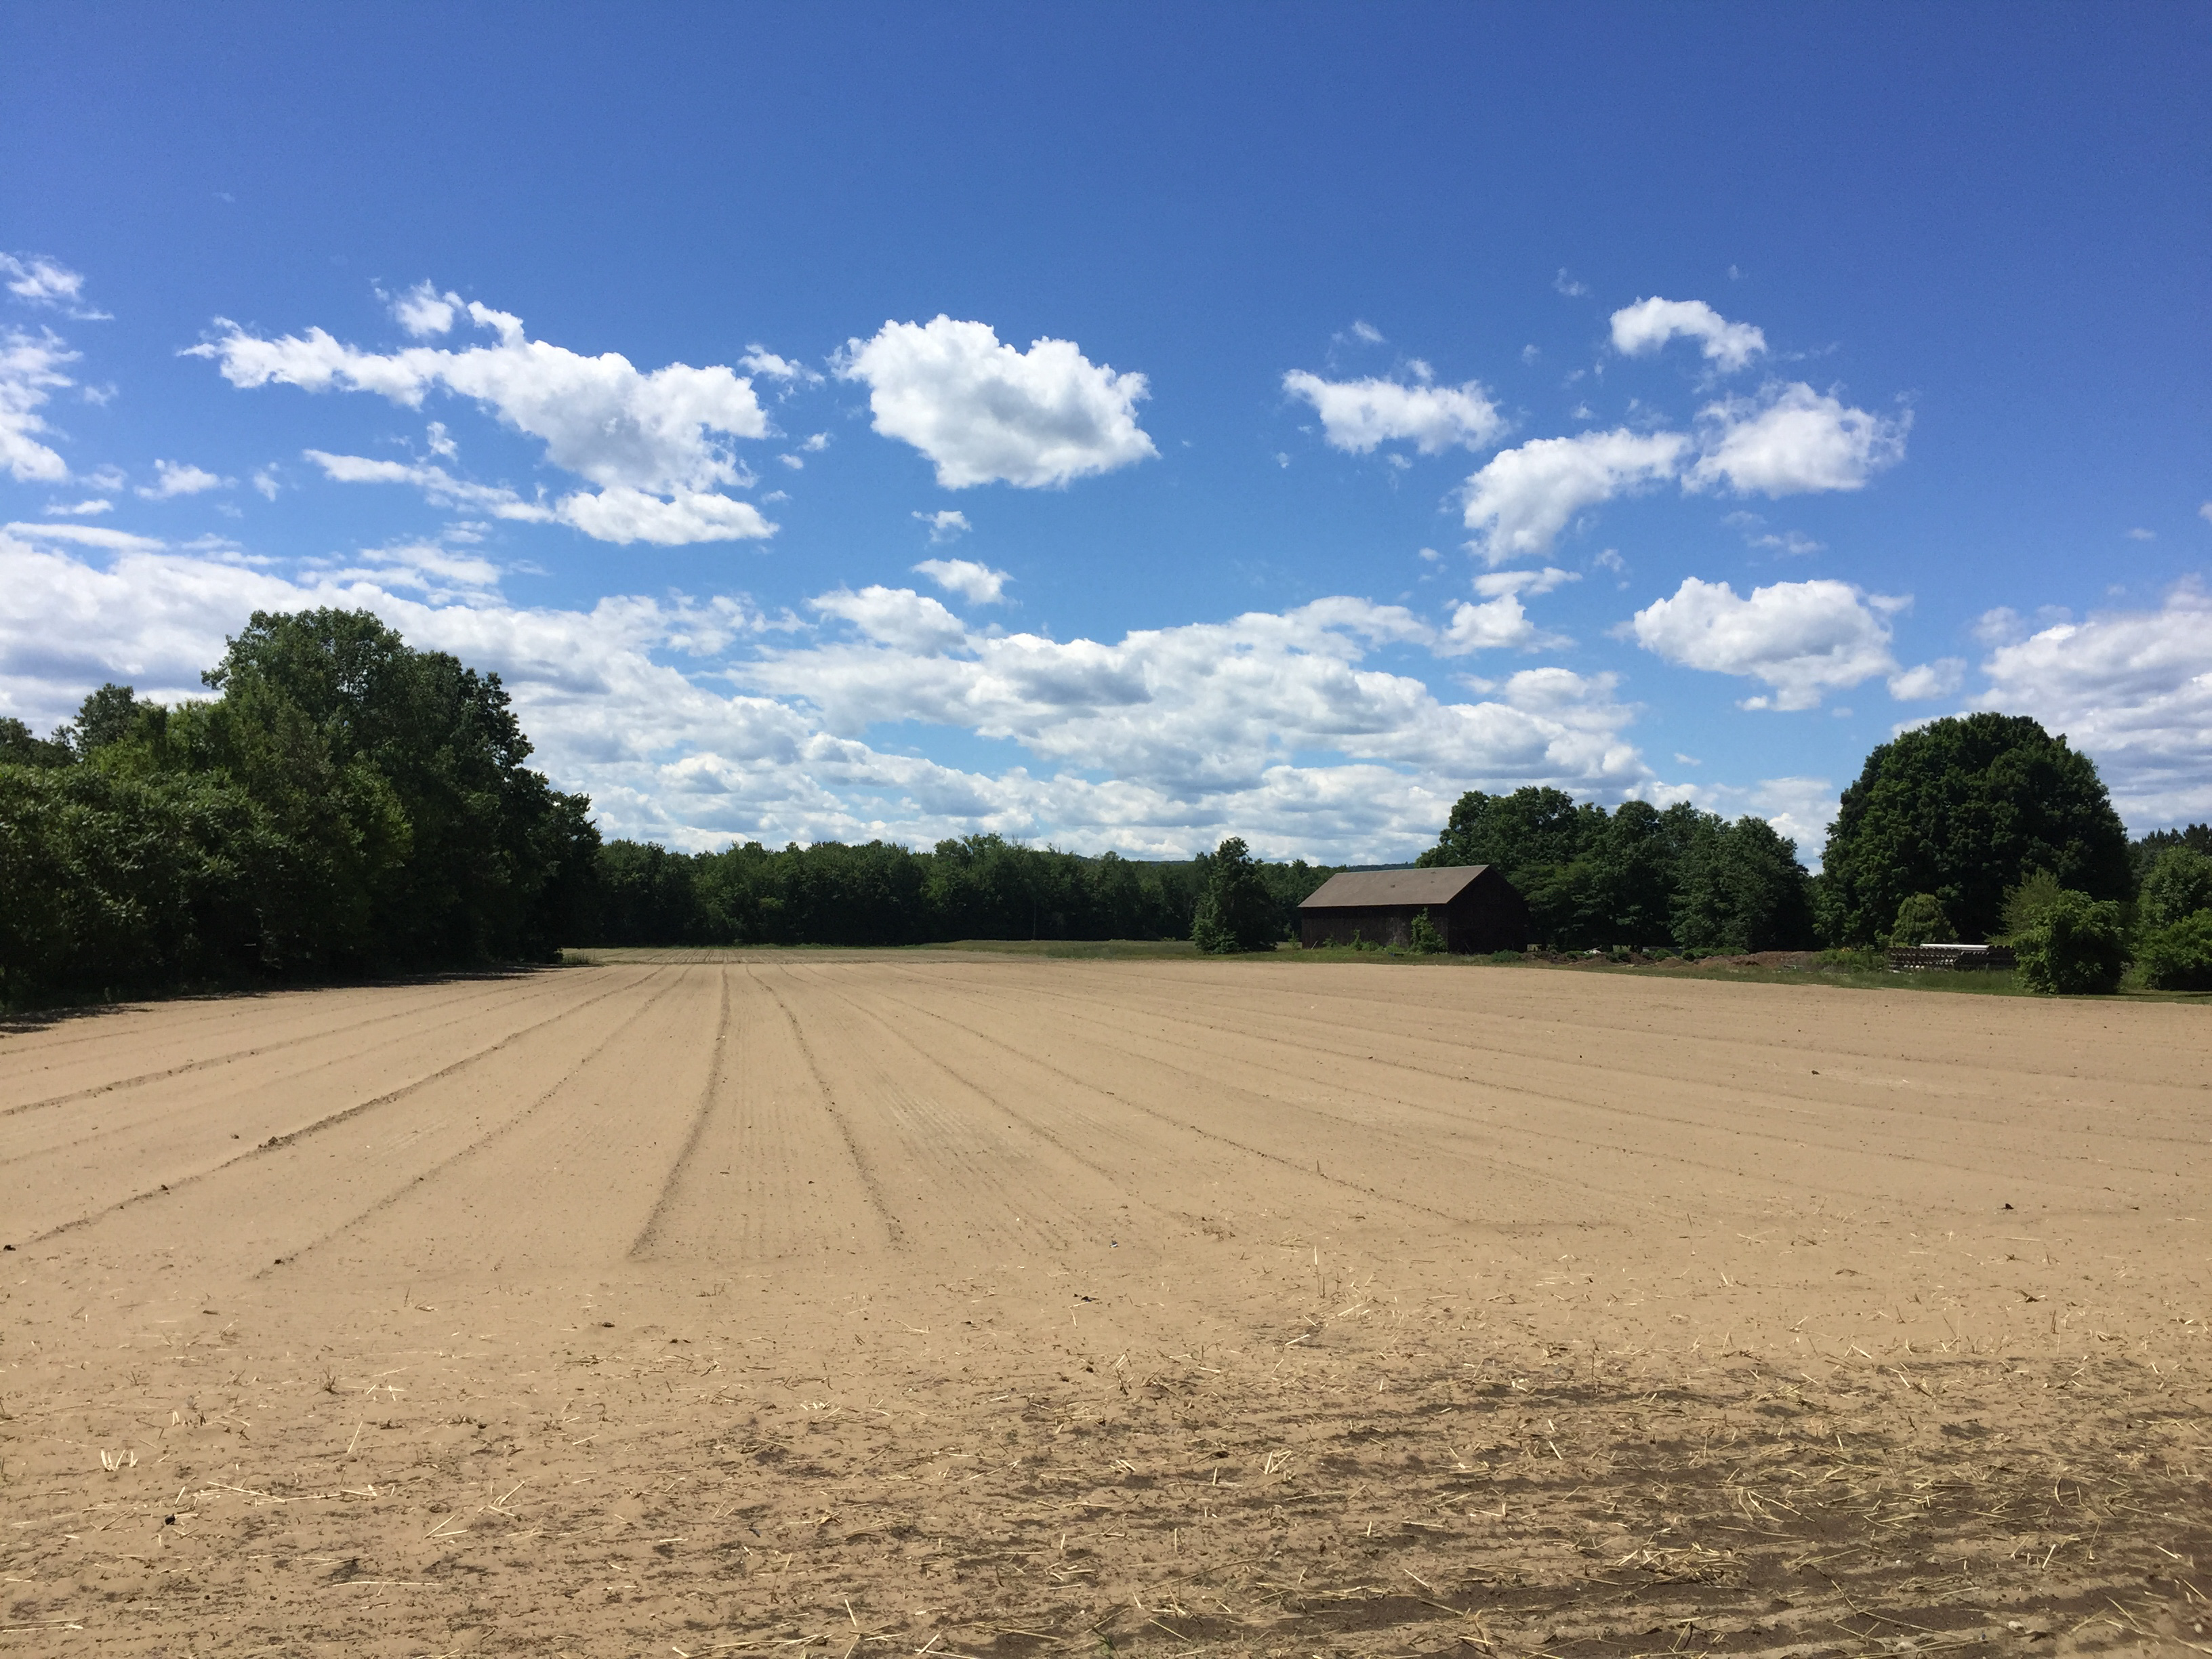 File:Dirt Field on Farm.jpg - Wikimedia Commons